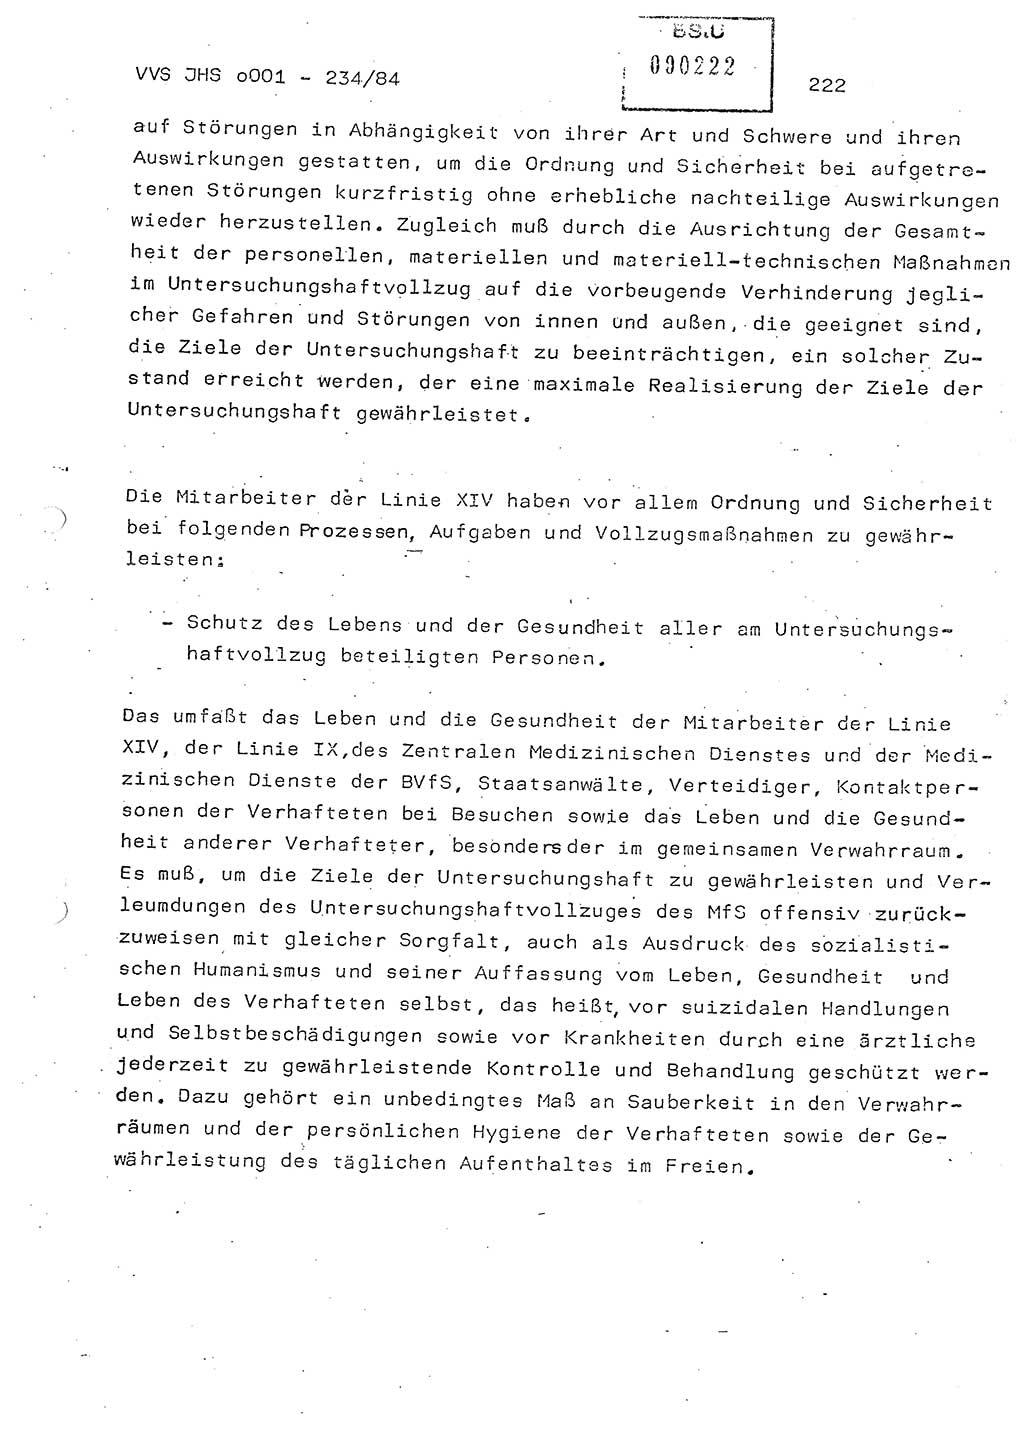 Dissertation Oberst Siegfried Rataizick (Abt. ⅩⅣ), Oberstleutnant Volkmar Heinz (Abt. ⅩⅣ), Oberstleutnant Werner Stein (HA Ⅸ), Hauptmann Heinz Conrad (JHS), Ministerium für Staatssicherheit (MfS) [Deutsche Demokratische Republik (DDR)], Juristische Hochschule (JHS), Vertrauliche Verschlußsache (VVS) o001-234/84, Potsdam 1984, Seite 222 (Diss. MfS DDR JHS VVS o001-234/84 1984, S. 222)